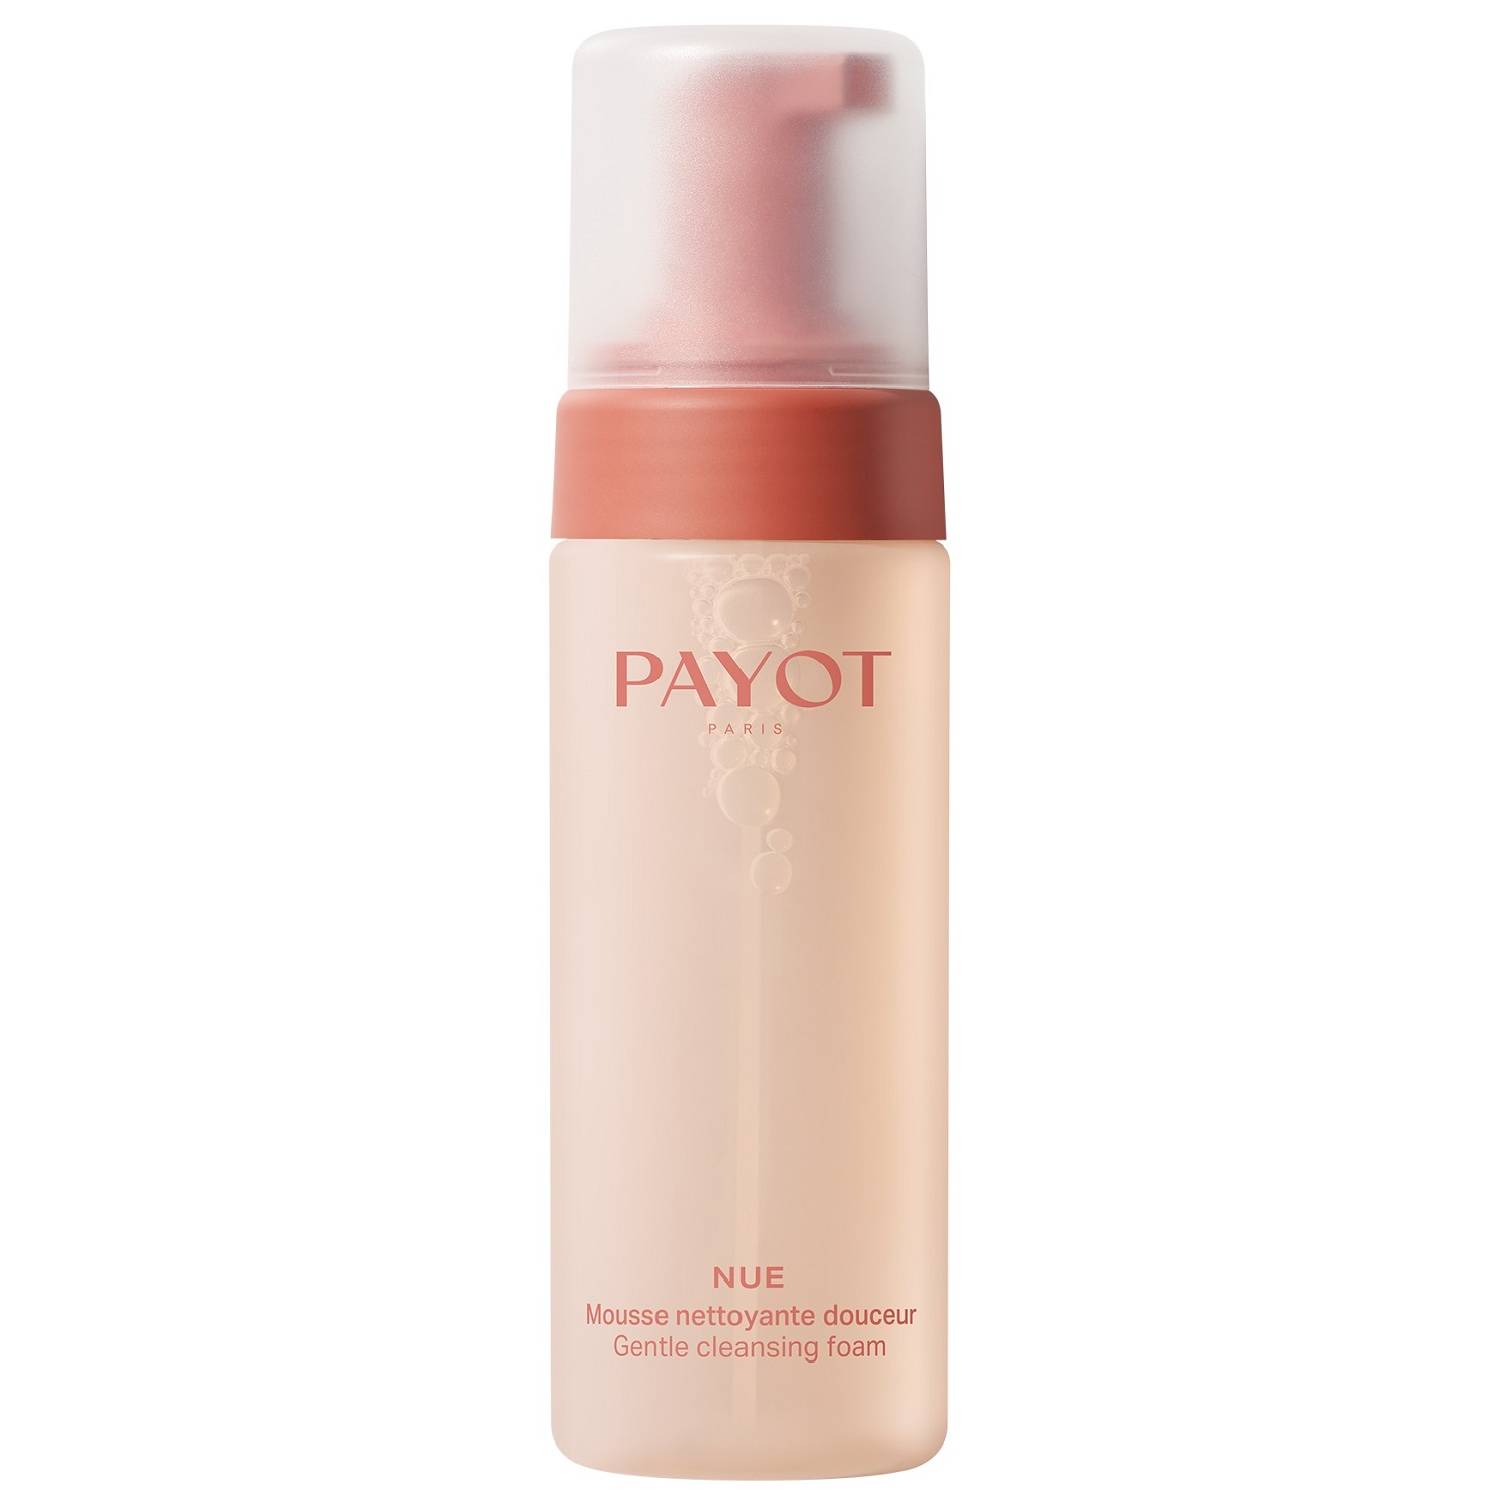 Payot Пенка для ежедневного очищения лица от загрязнений и токсинов, 150 мл (Payot, Nue)